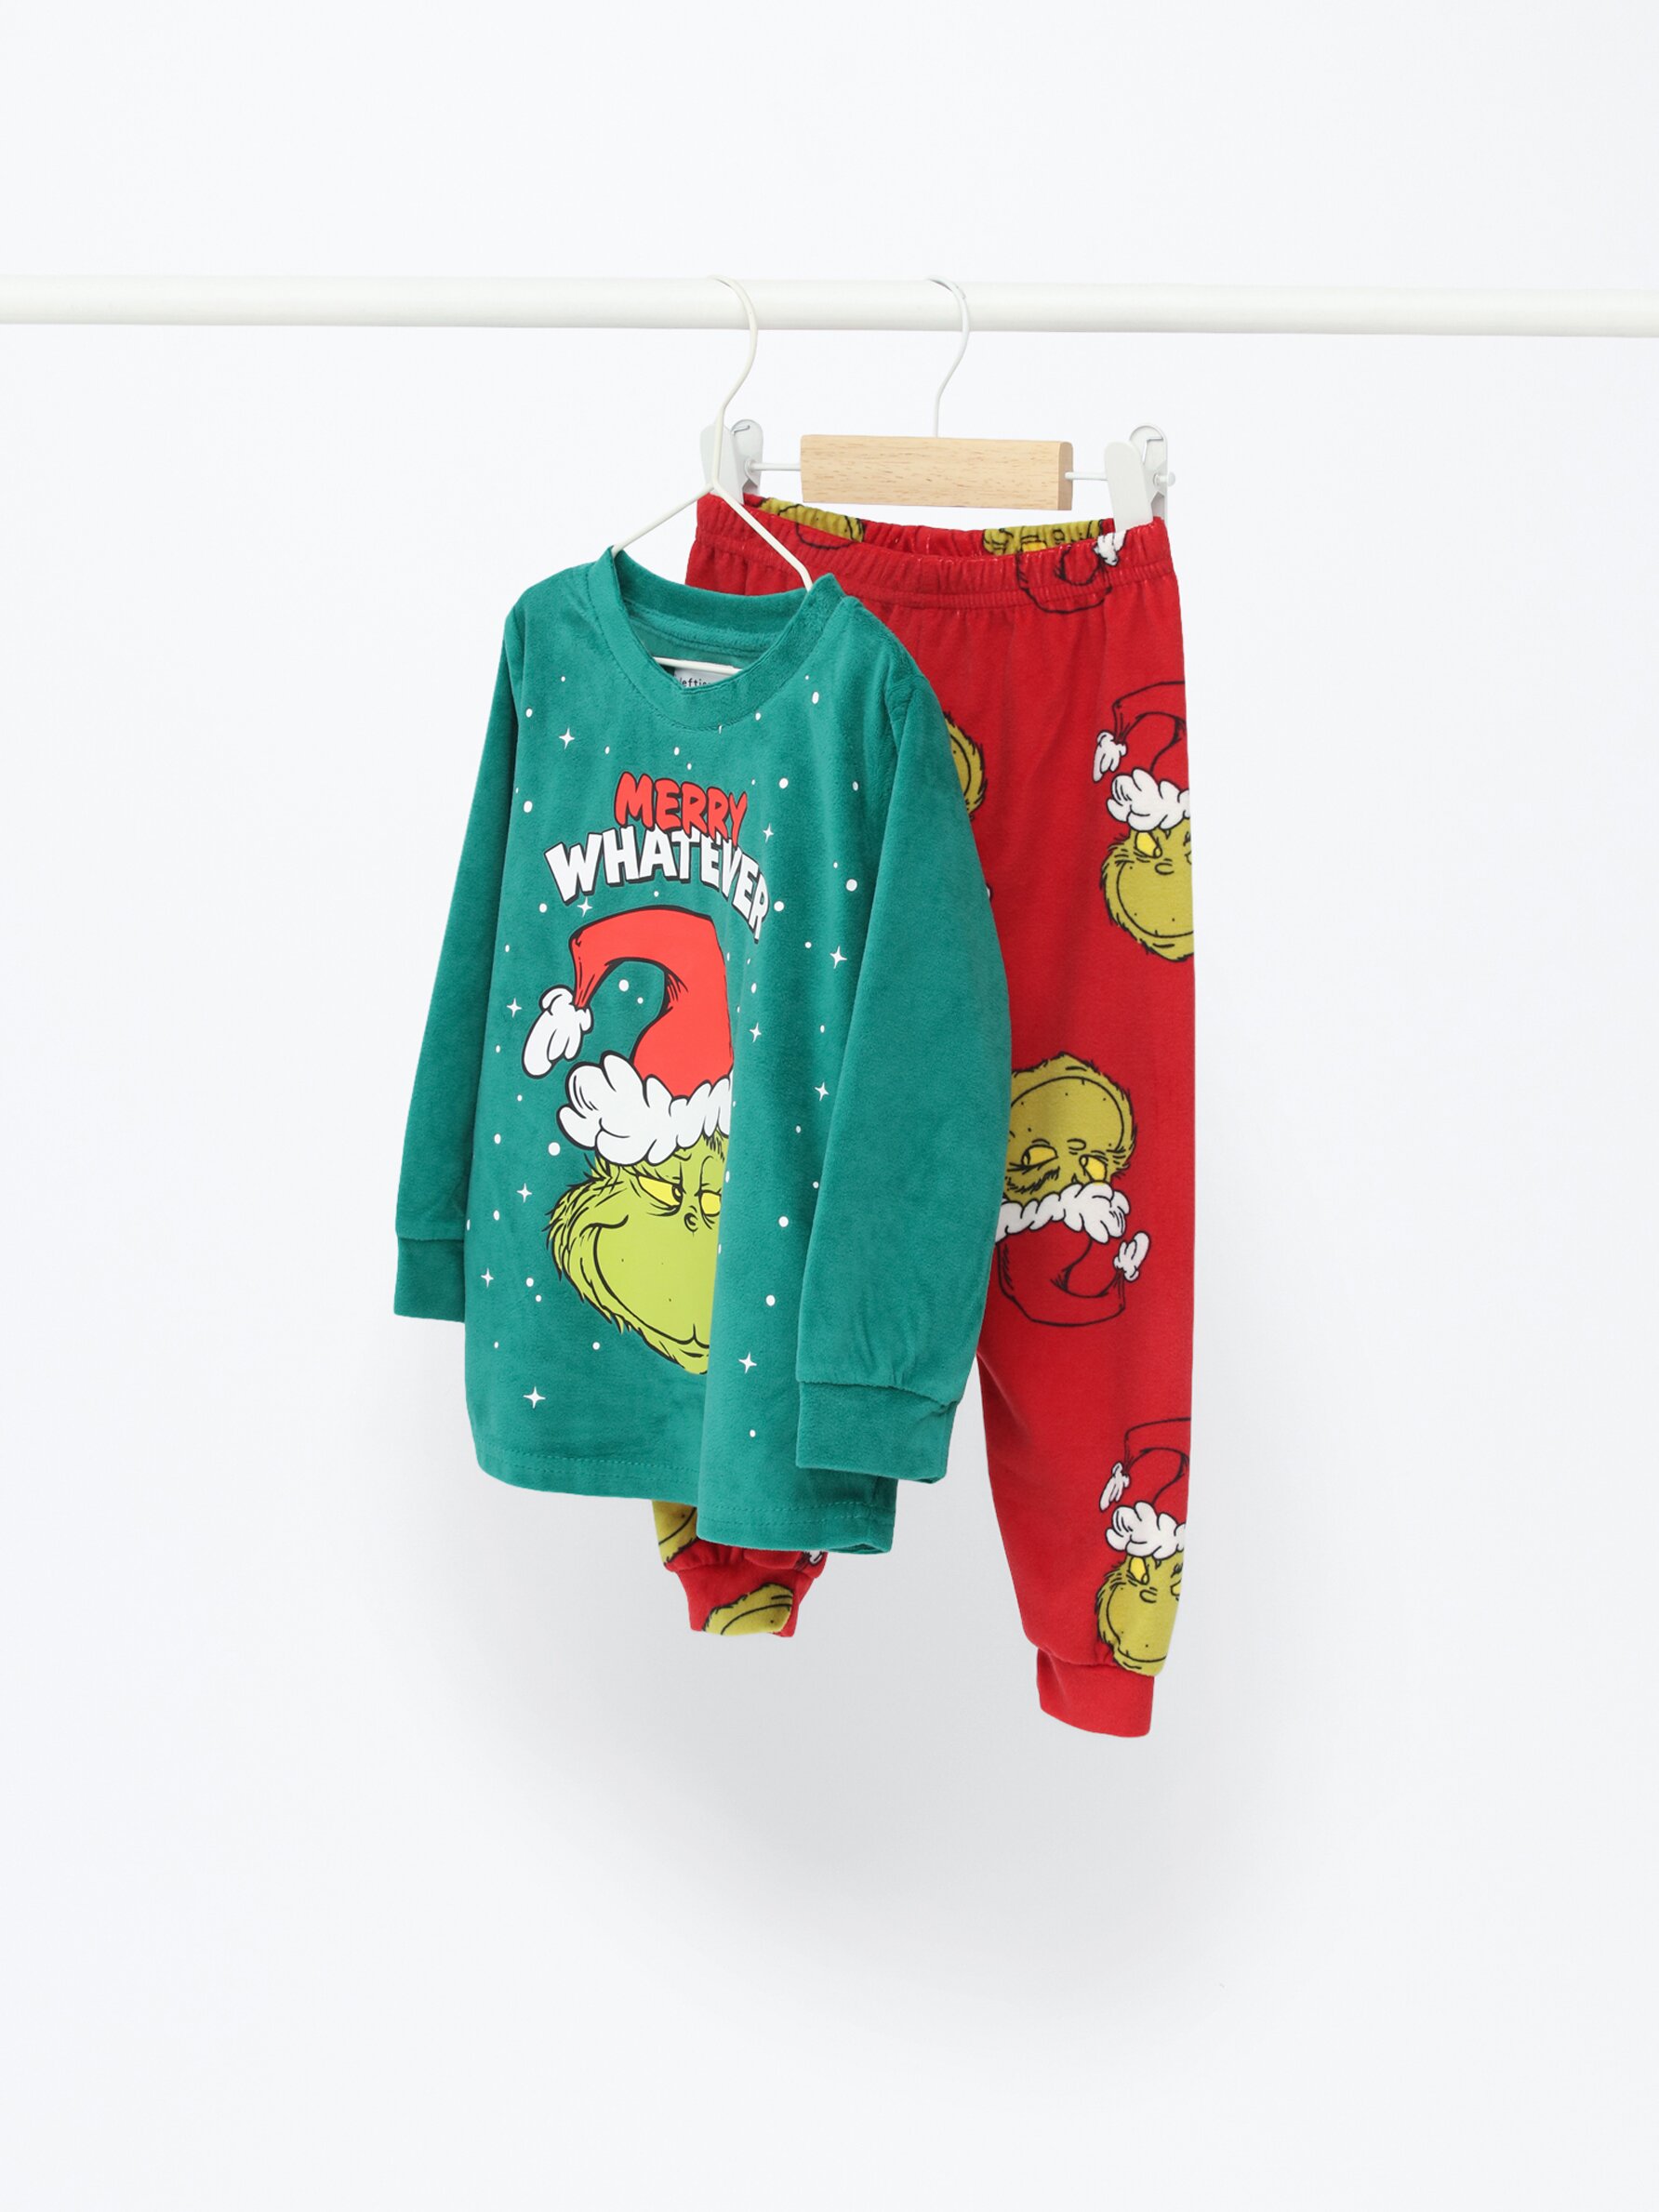 Bebé, pijama familiar Grinch terciopelo - Pijamas - ROPA INTERIOR, PIJAMAS  - Bebé Niño - Niños 